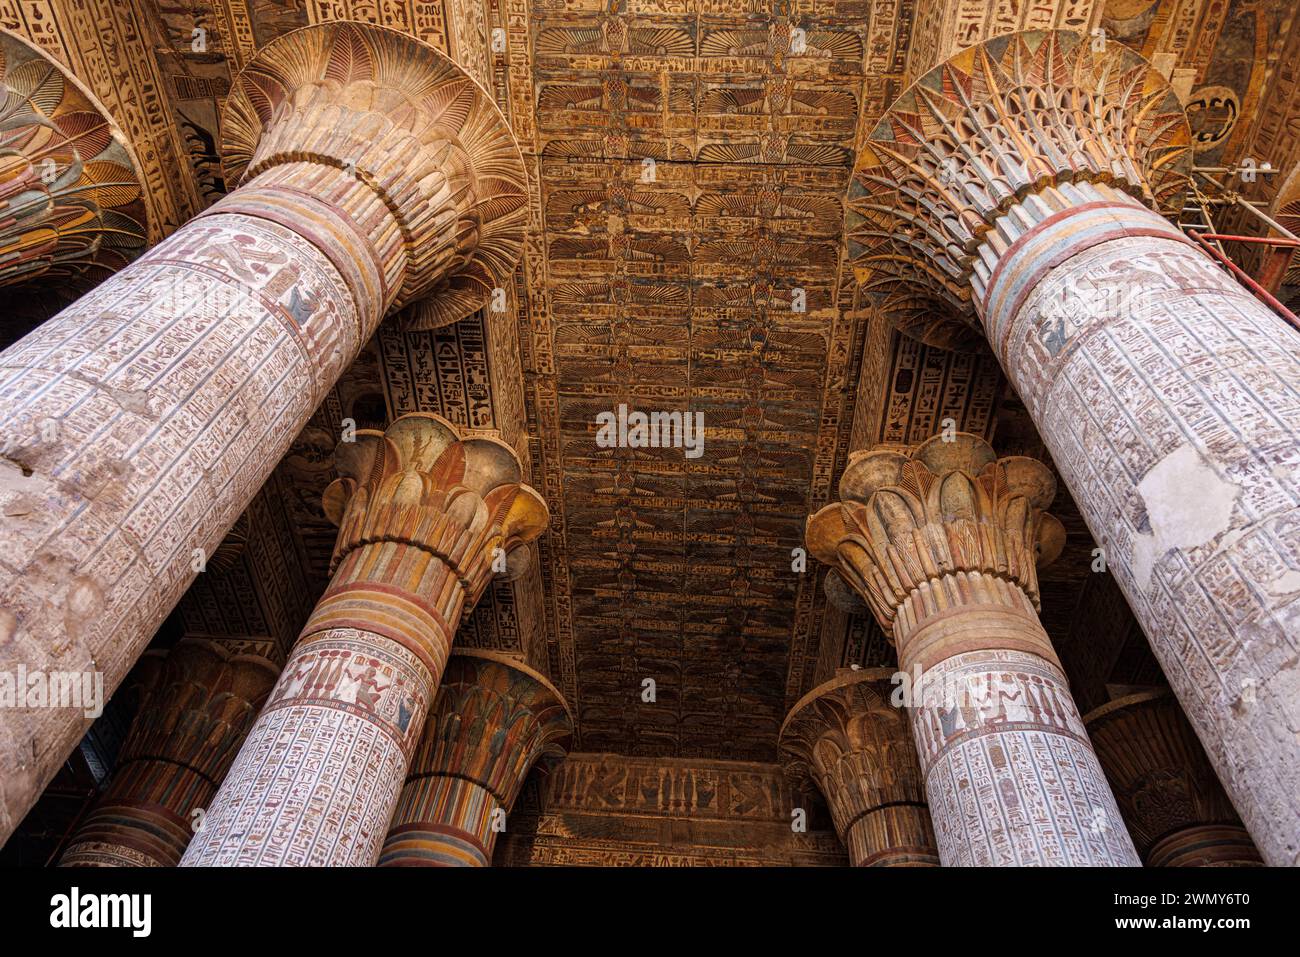 Egypte, Esna, temples pharaoniques en haute Egypte des périodes ptolémaïque et romaine classées au patrimoine mondial par l'UNESCO, Temple Khnum Banque D'Images